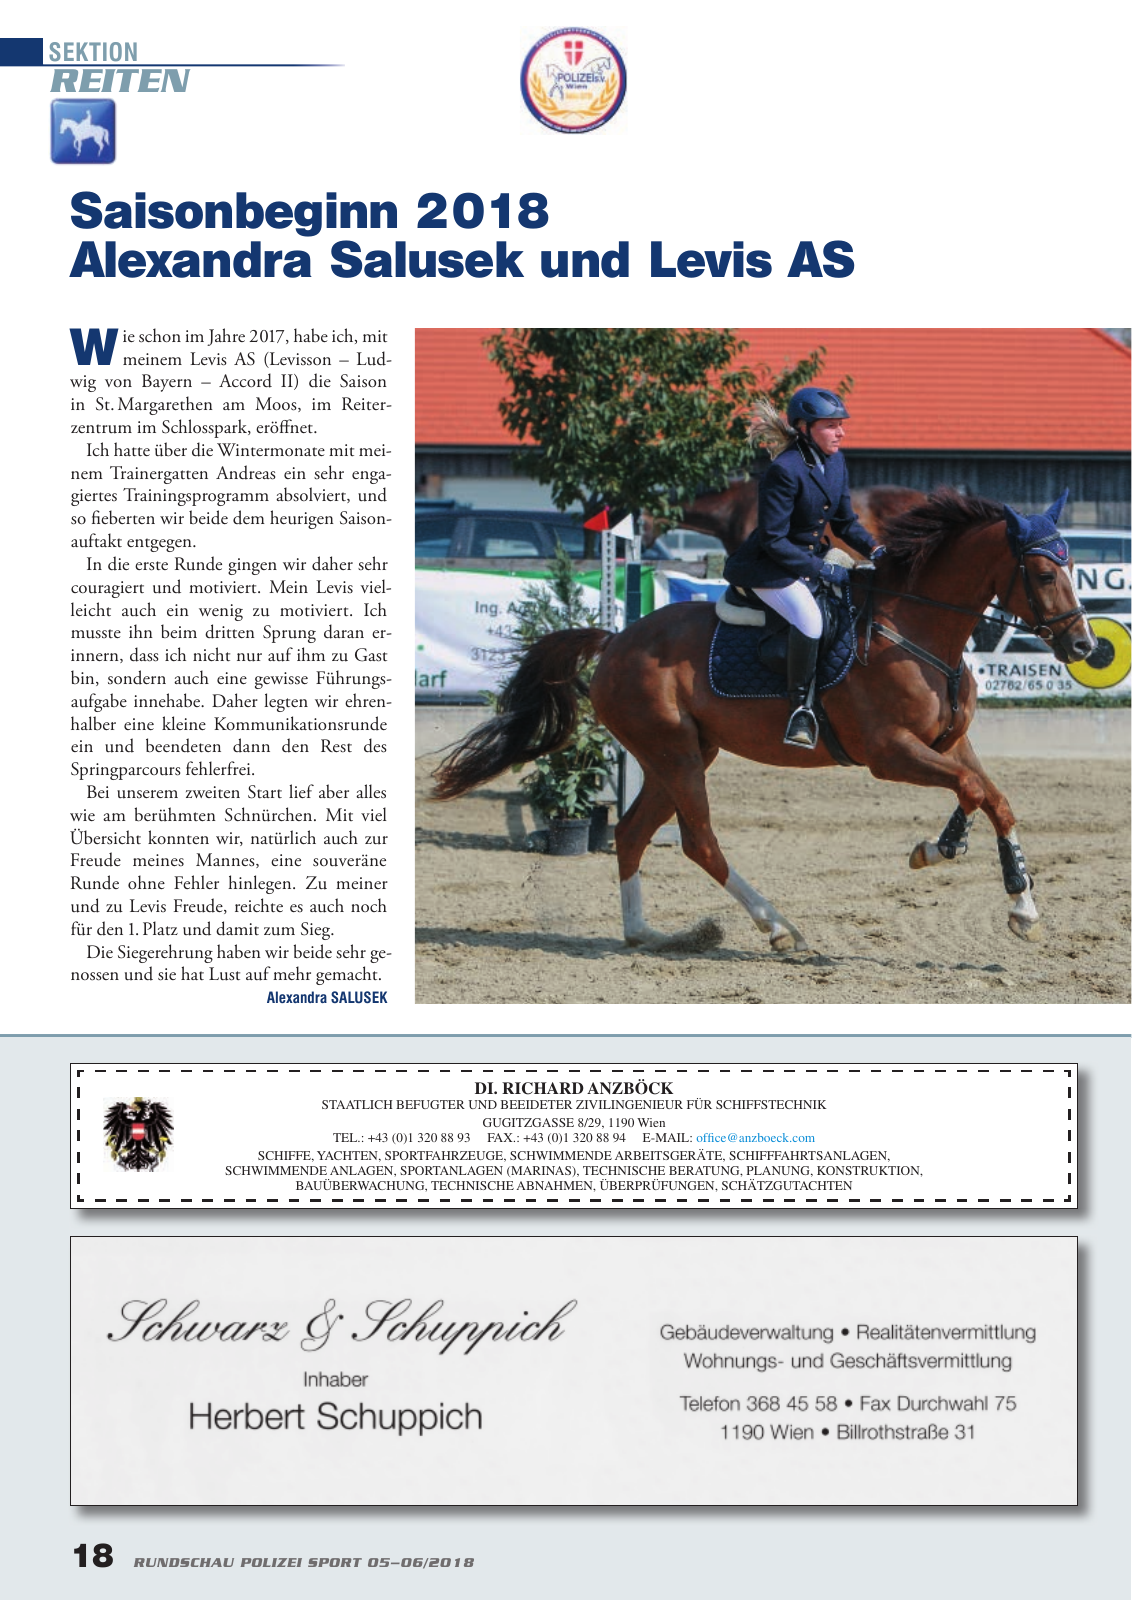 Vorschau Rundschau Polizei Sport 05-06/2018 Seite 18